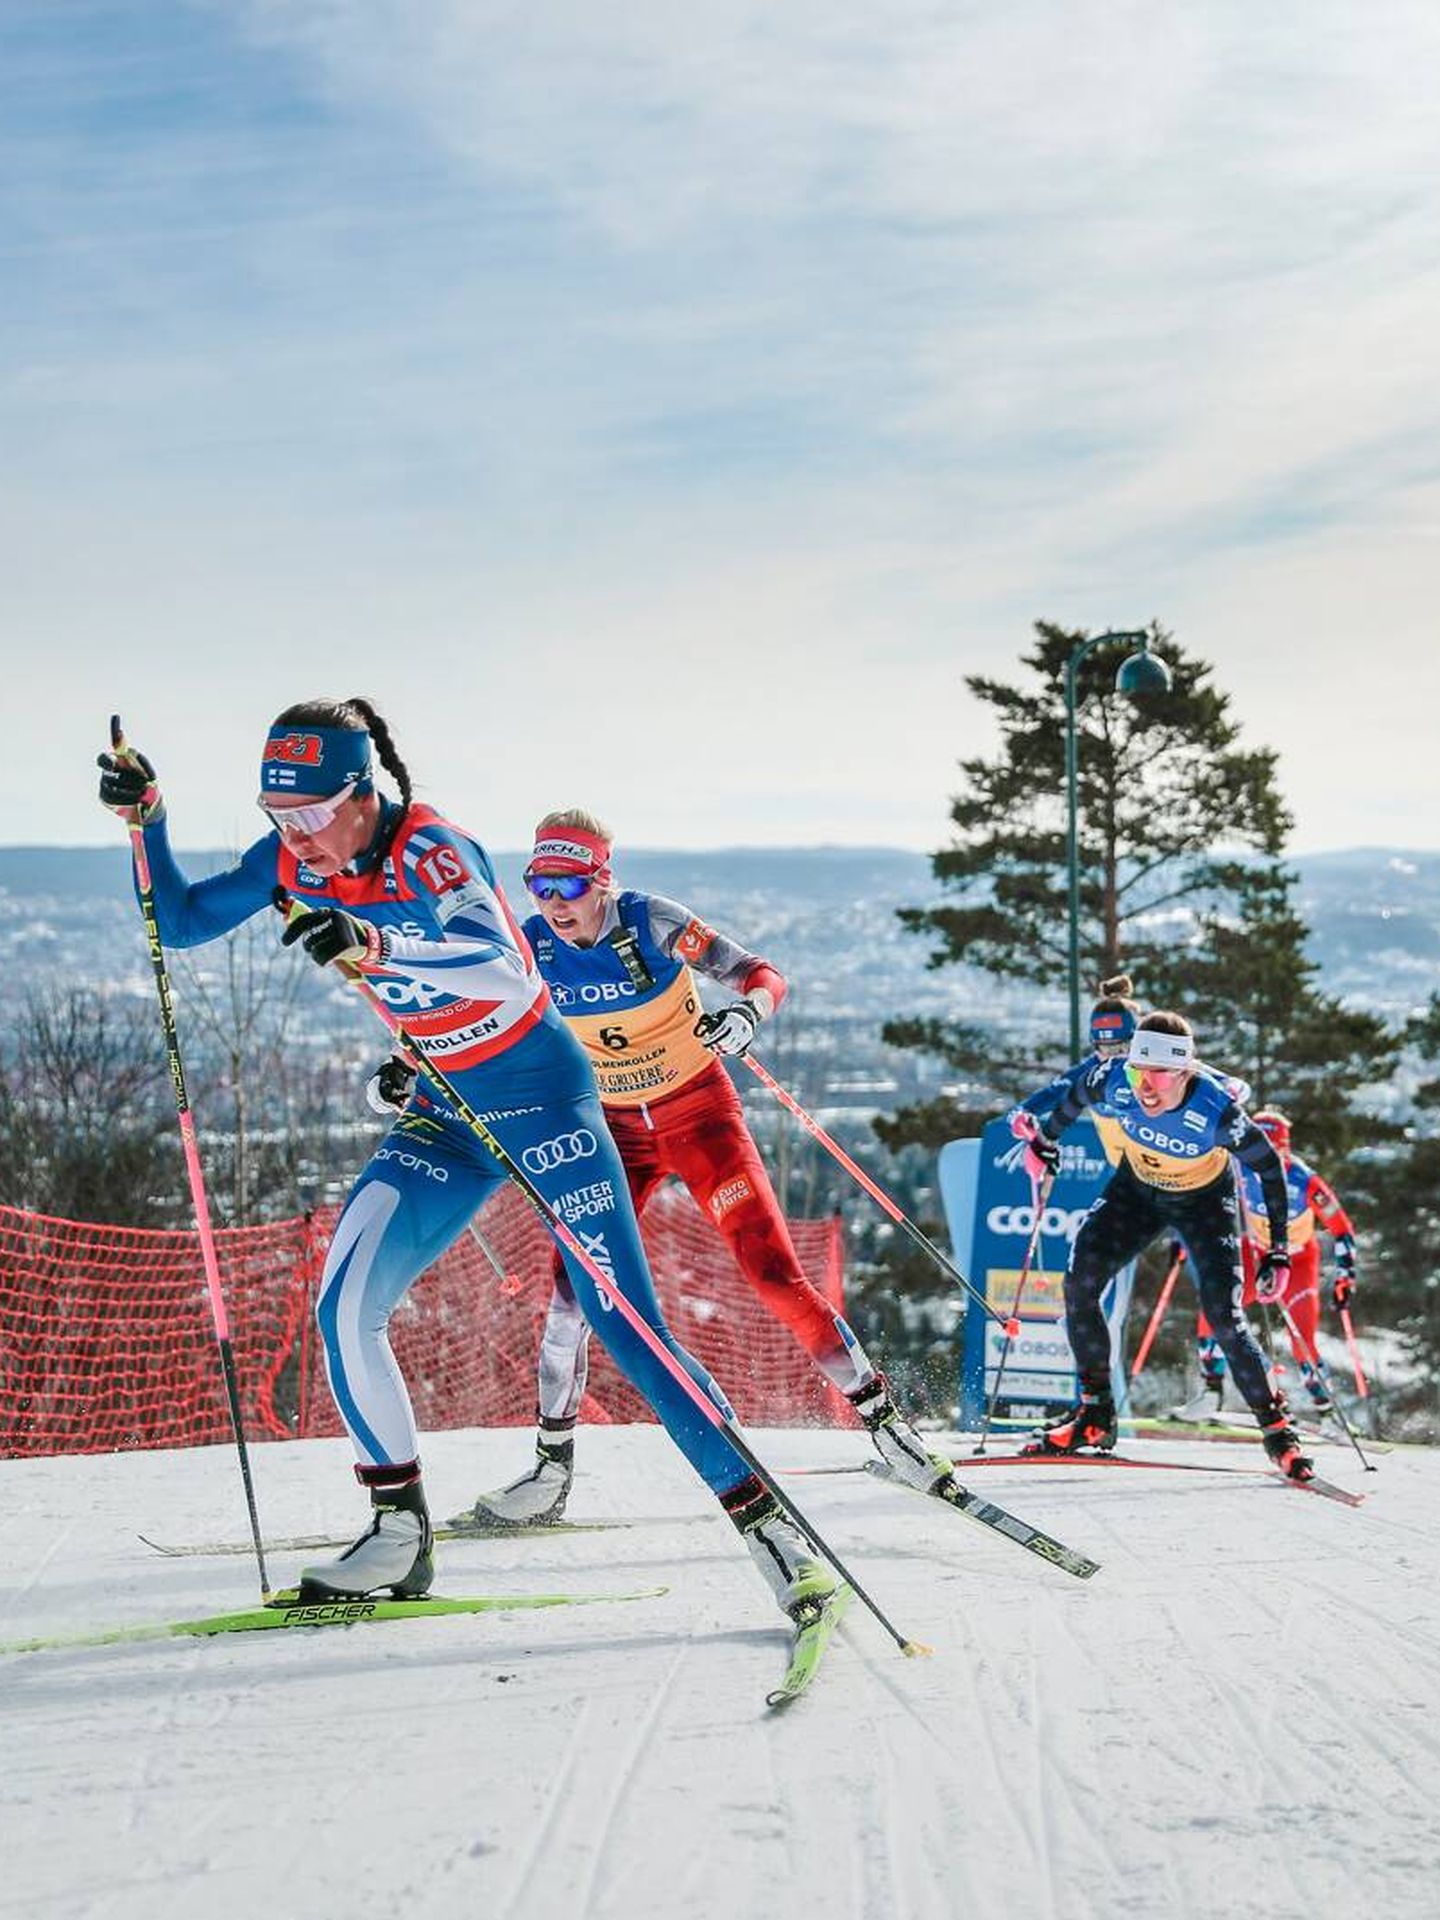 Certina patrocina la Copa del Mundo de Esquí de Fondo que cada año se celebra en Oslo. (Cortesía)